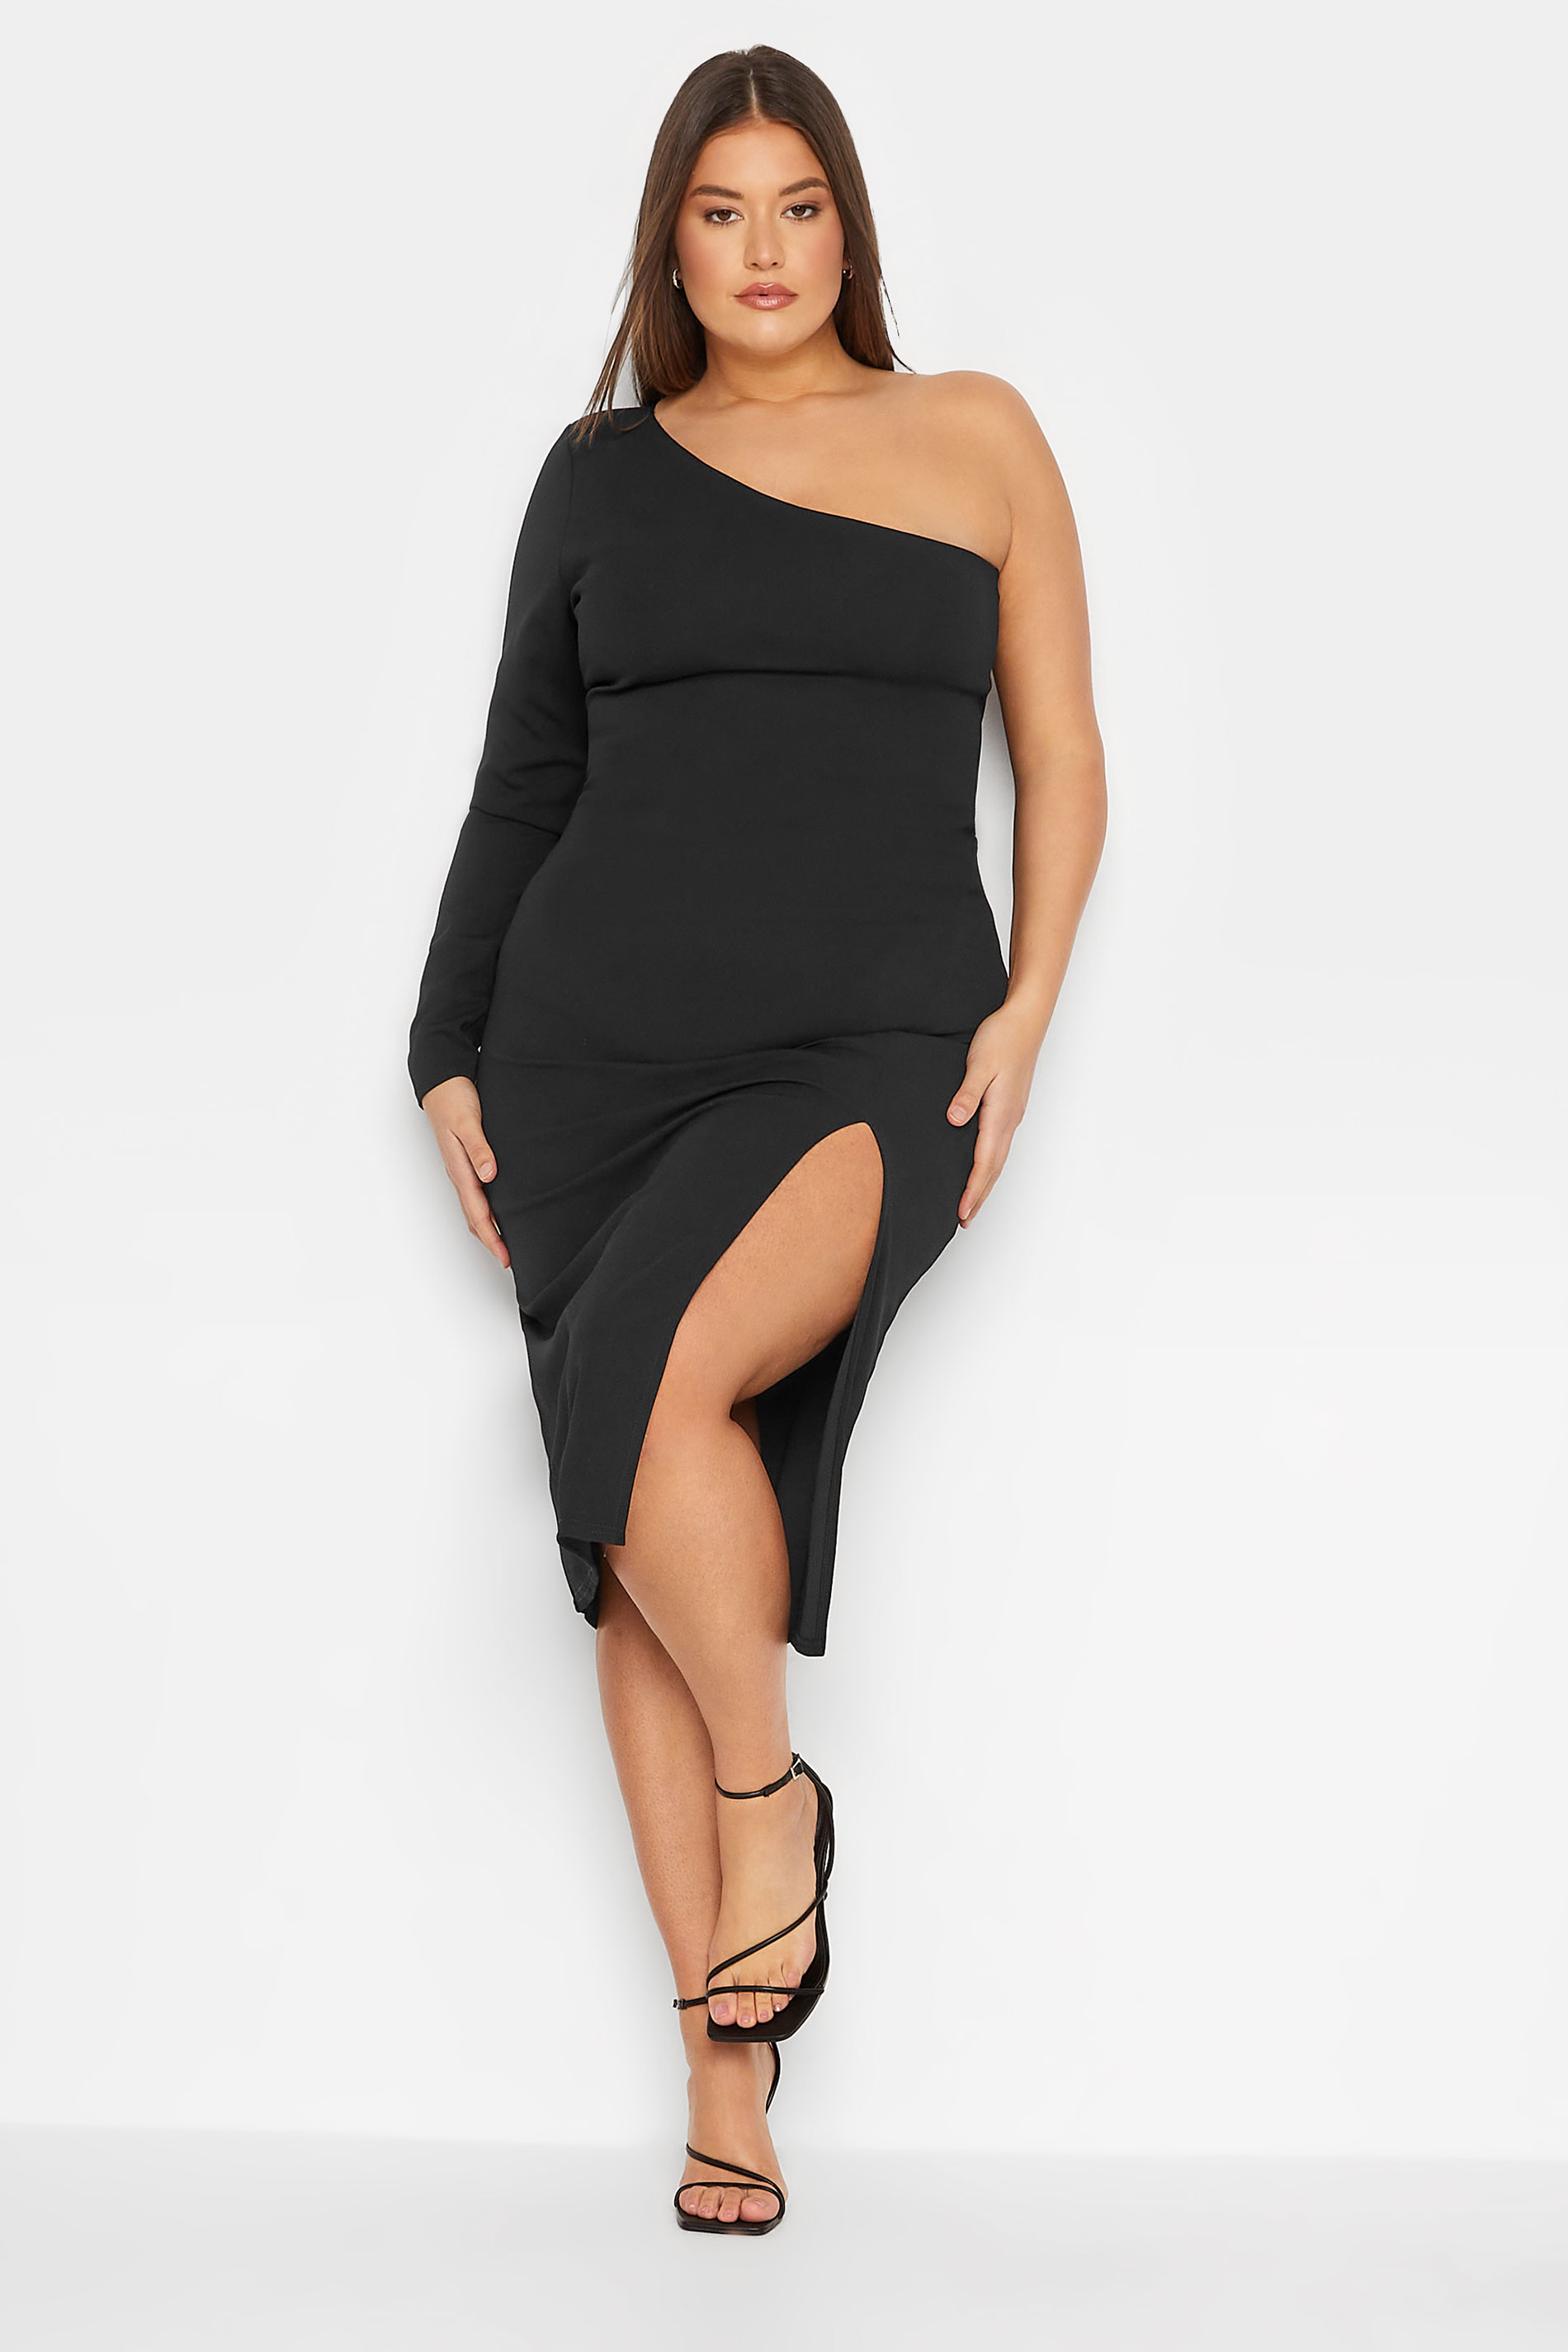 LTS Tall Women's Black One Shoulder Dress | Long Tall Sally 1